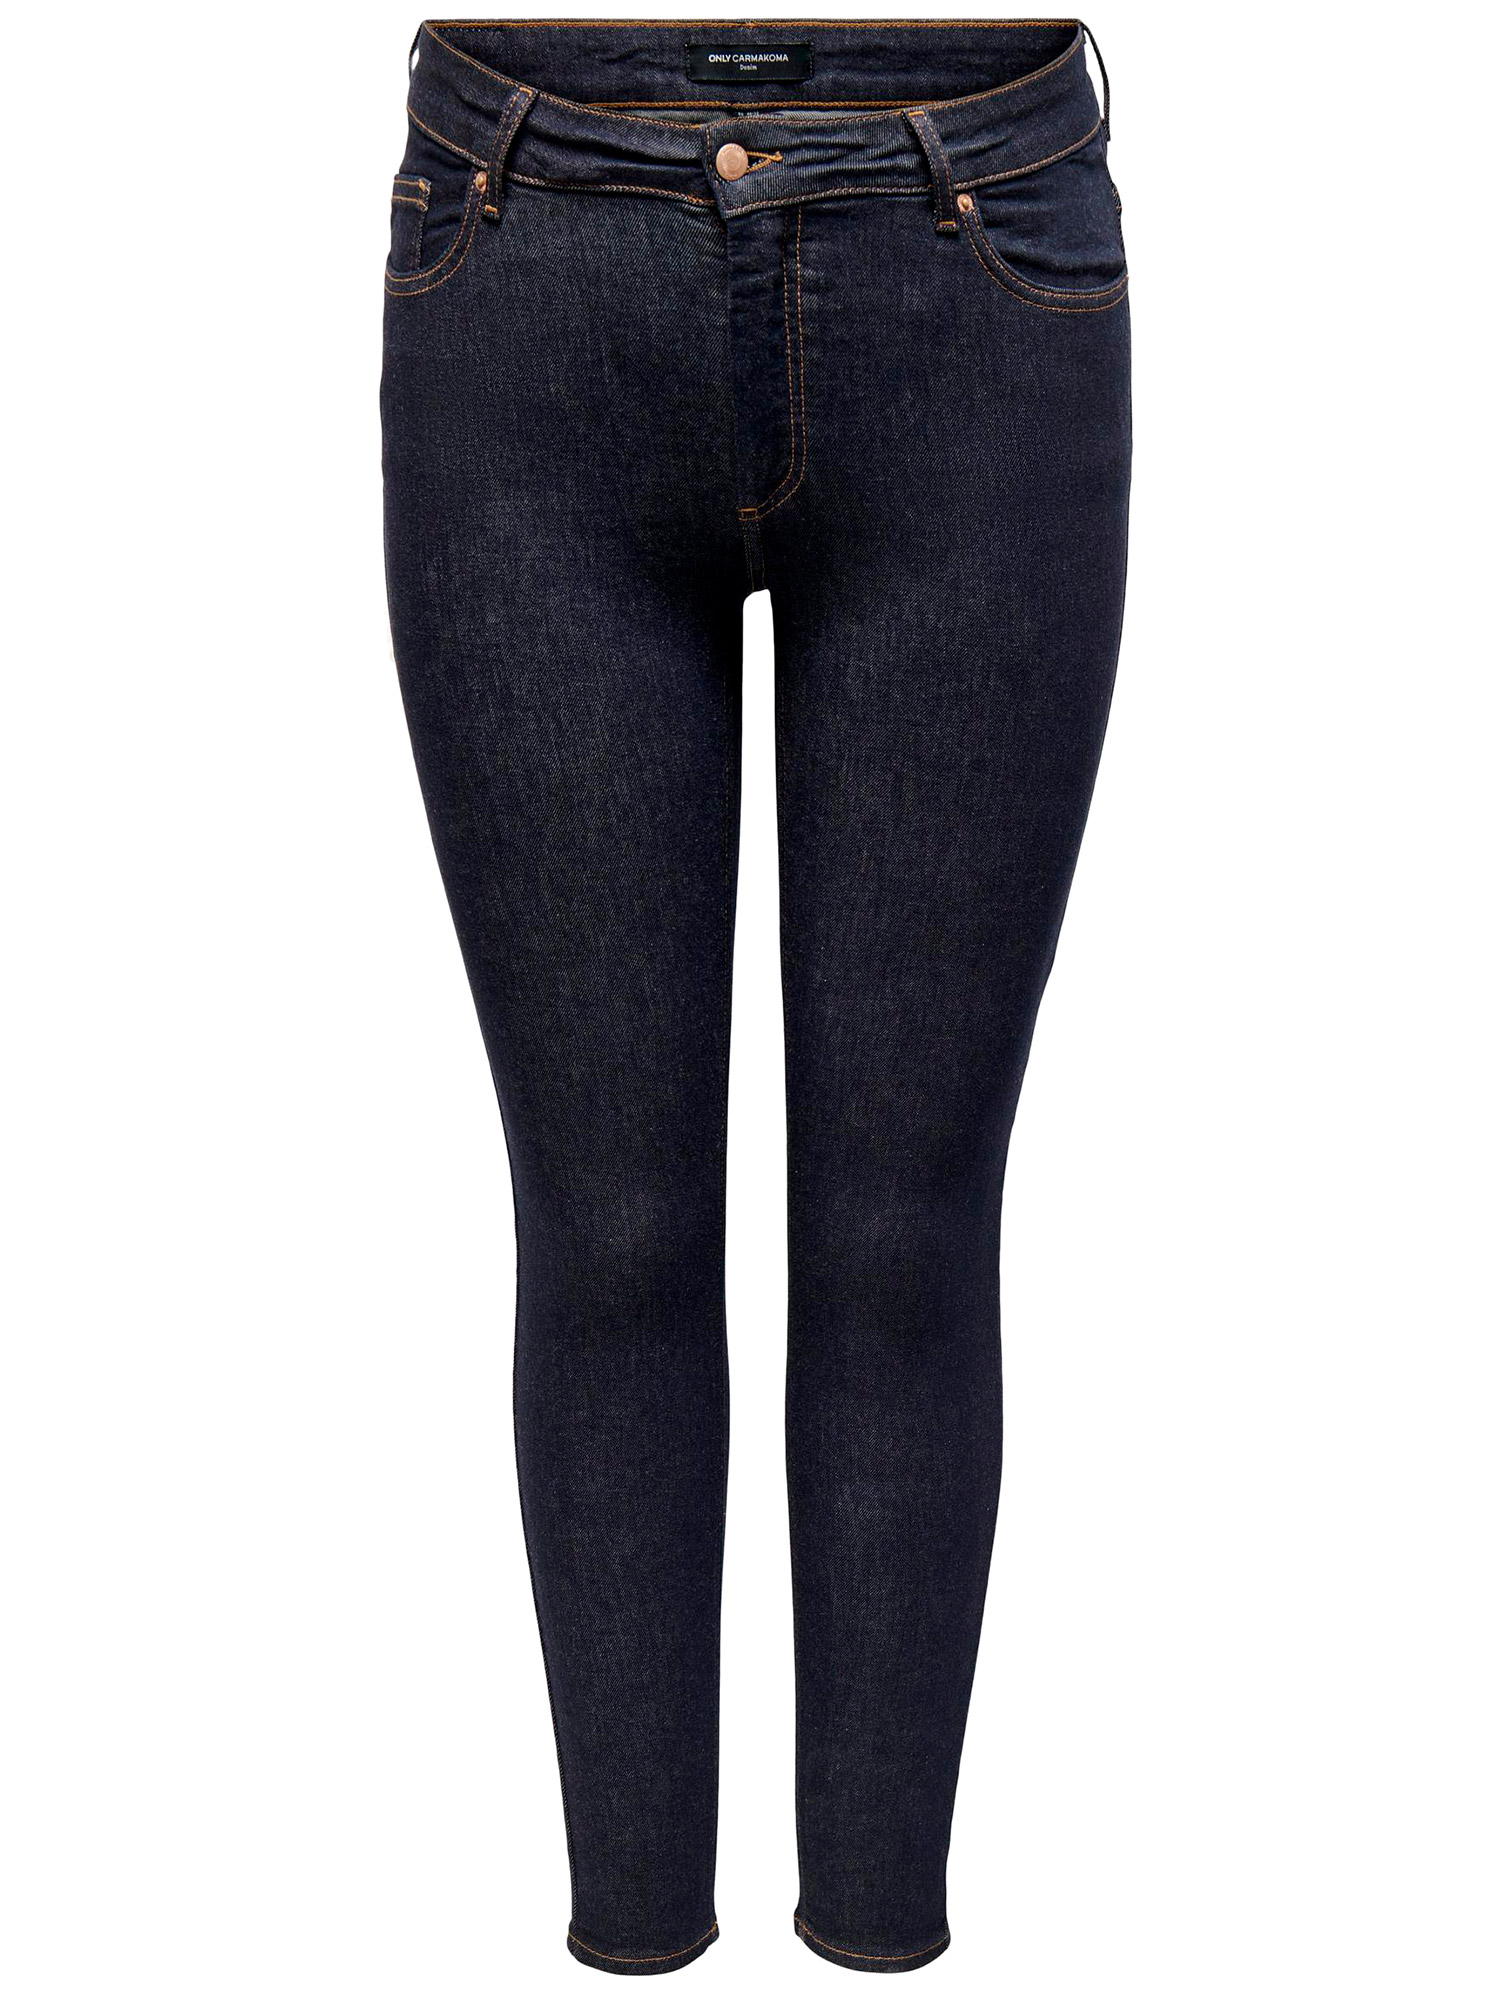 WILLY - Mørkeblå jeans med stræk, benlængde 34 fra Only Carmakoma